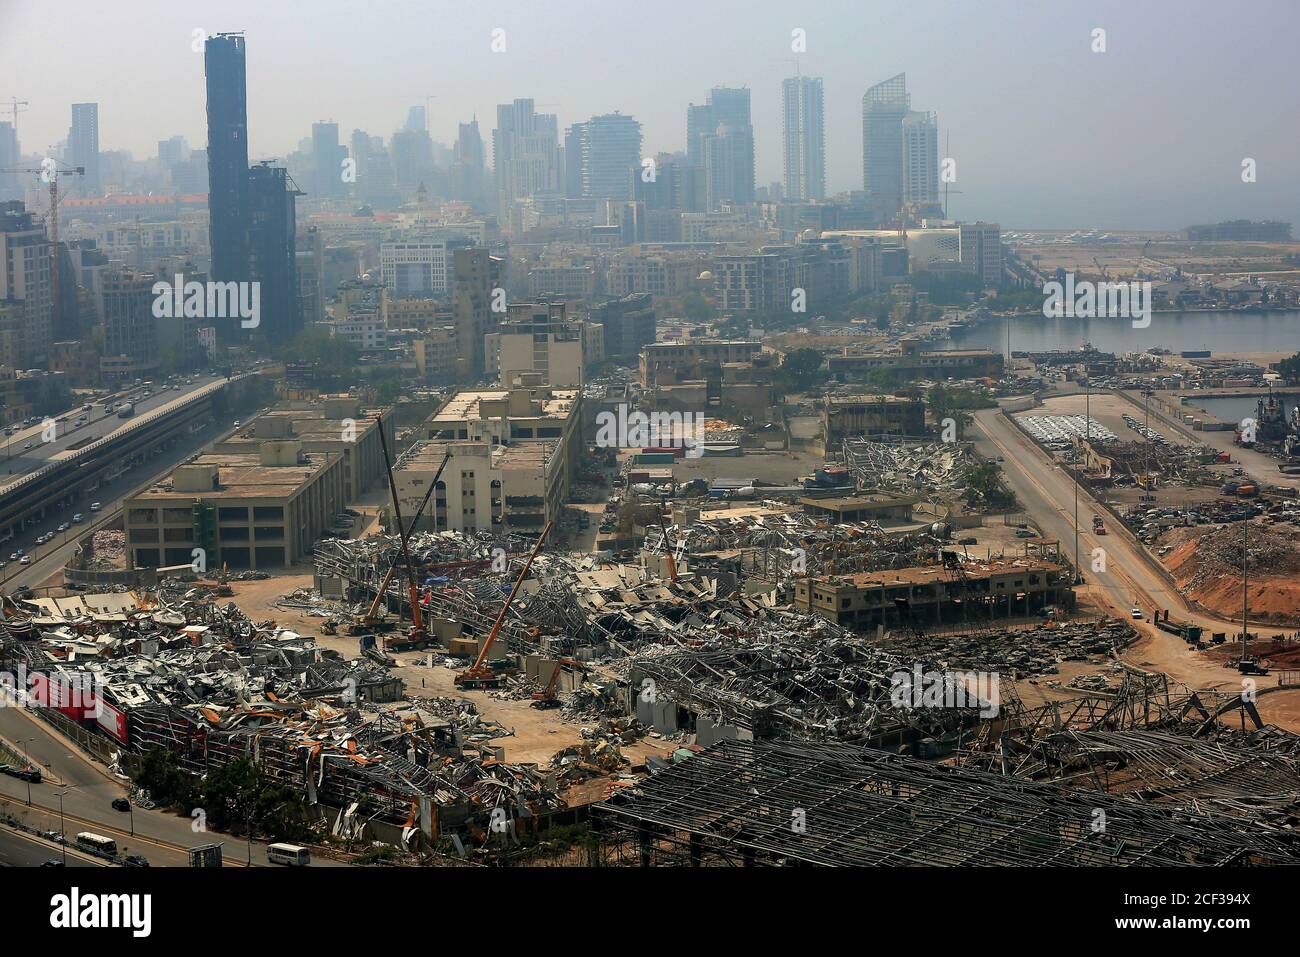 Beirut, Libanon. September 2020. Ein Blick auf verwüstete Lagerhäuser im Hafen von Beirut, dem Ort der massiven Explosion, die Beirut am 04. August 2020 erschütterte. Quelle: Marwan Naamani/dpa/Alamy Live News Stockfoto